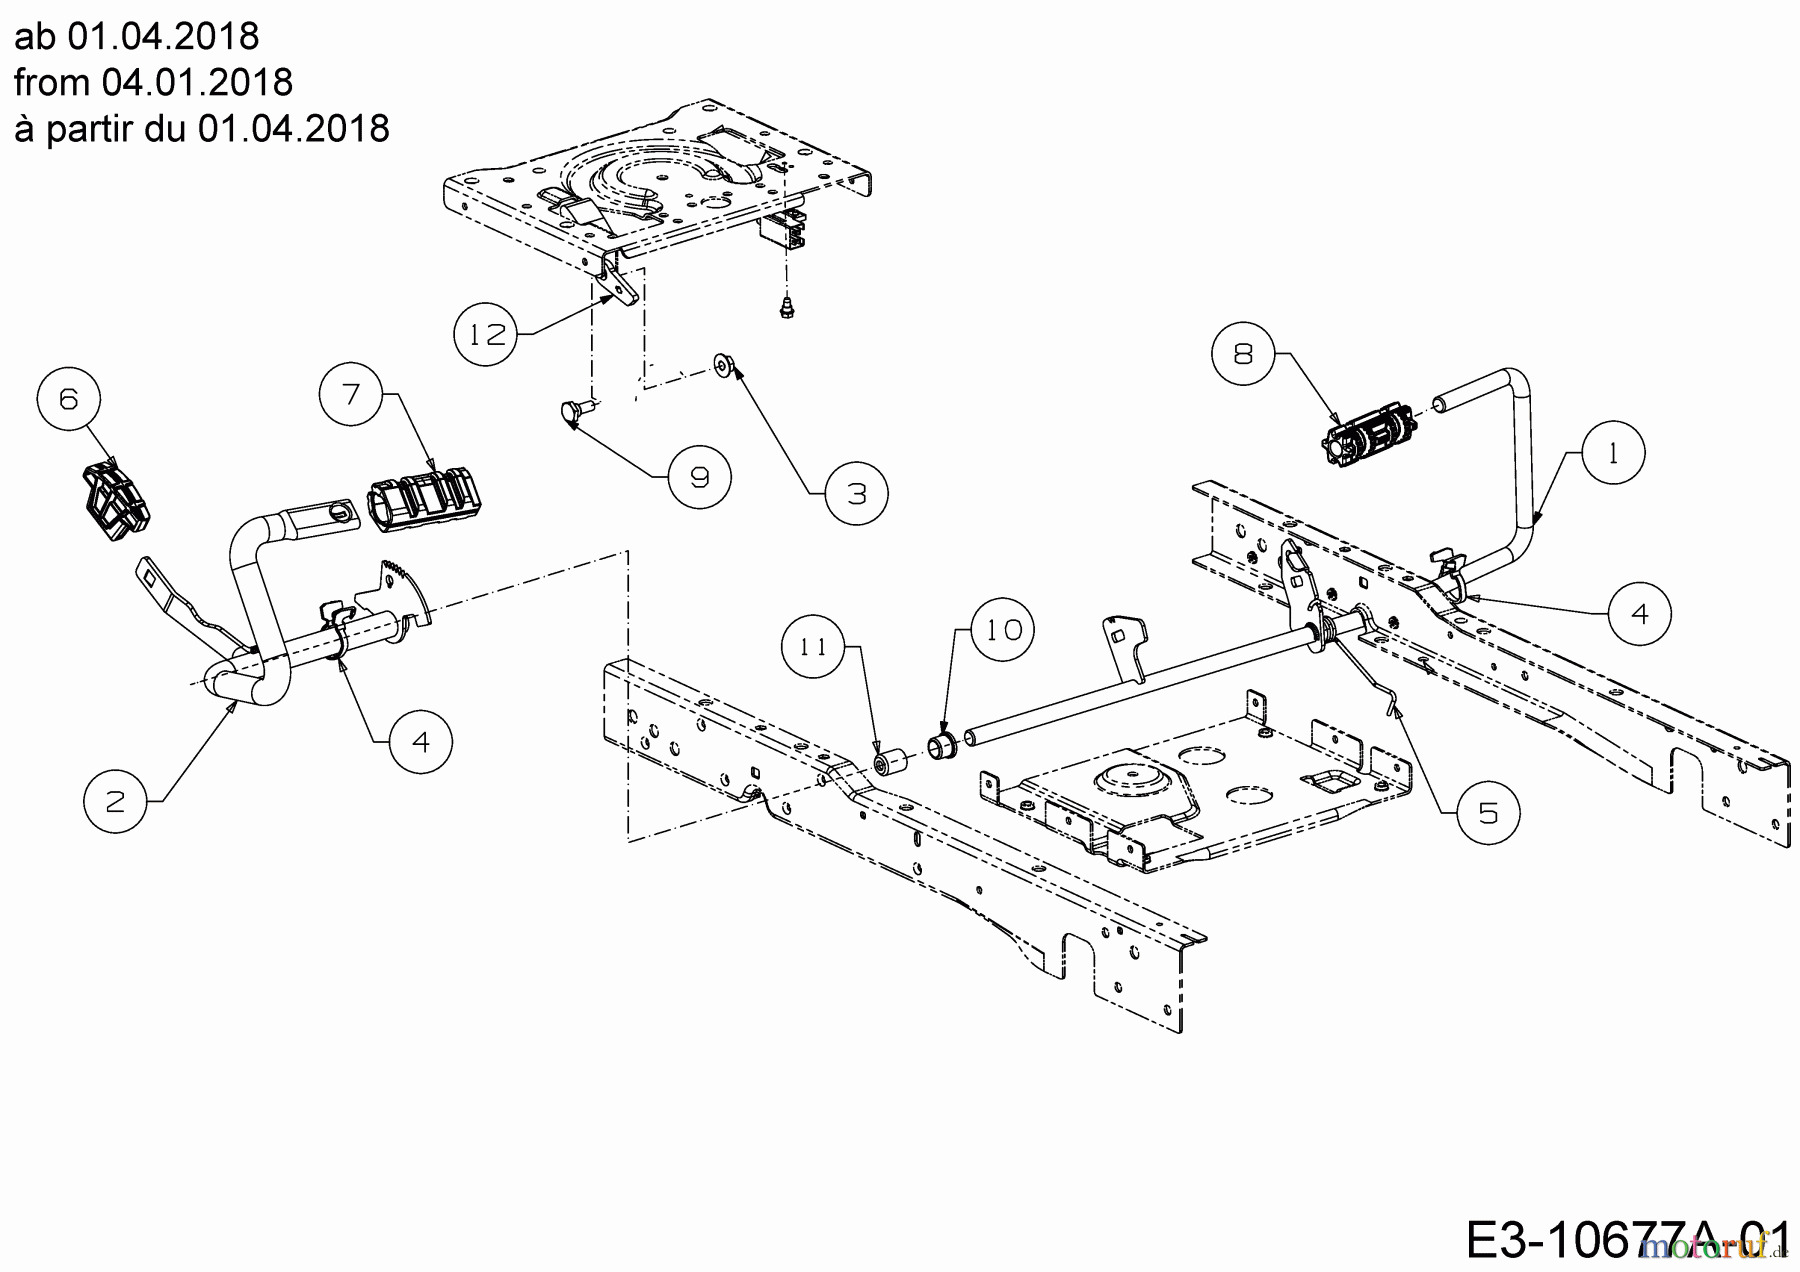  Cub Cadet Lawn tractors XT1 OS107 13A8A1CS603  (2019) Pedals from 04.01.2018